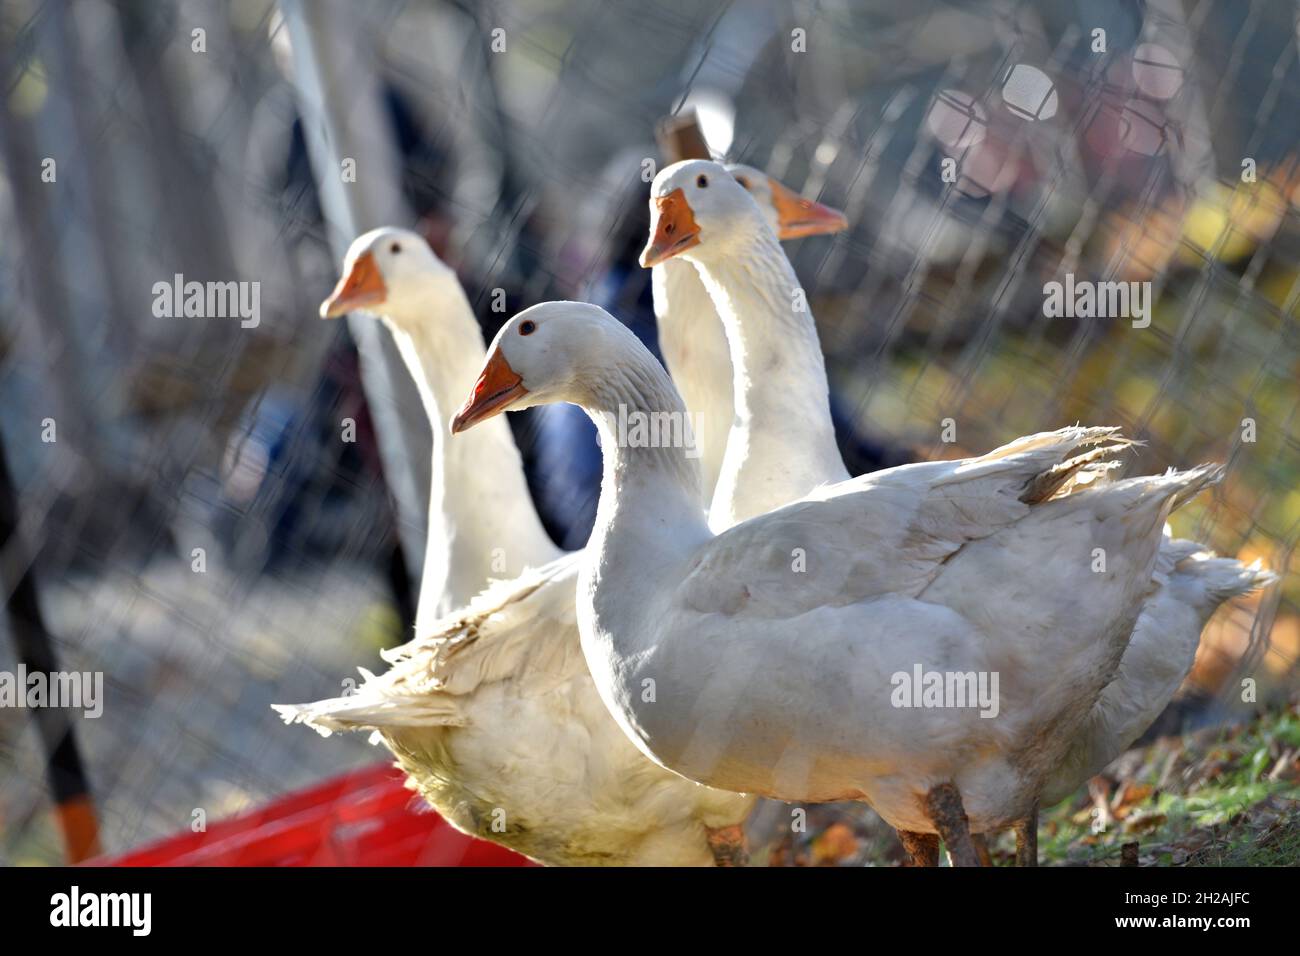 Drei Gänse in einem Gehege - Three geese in a enclosure Stock Photo